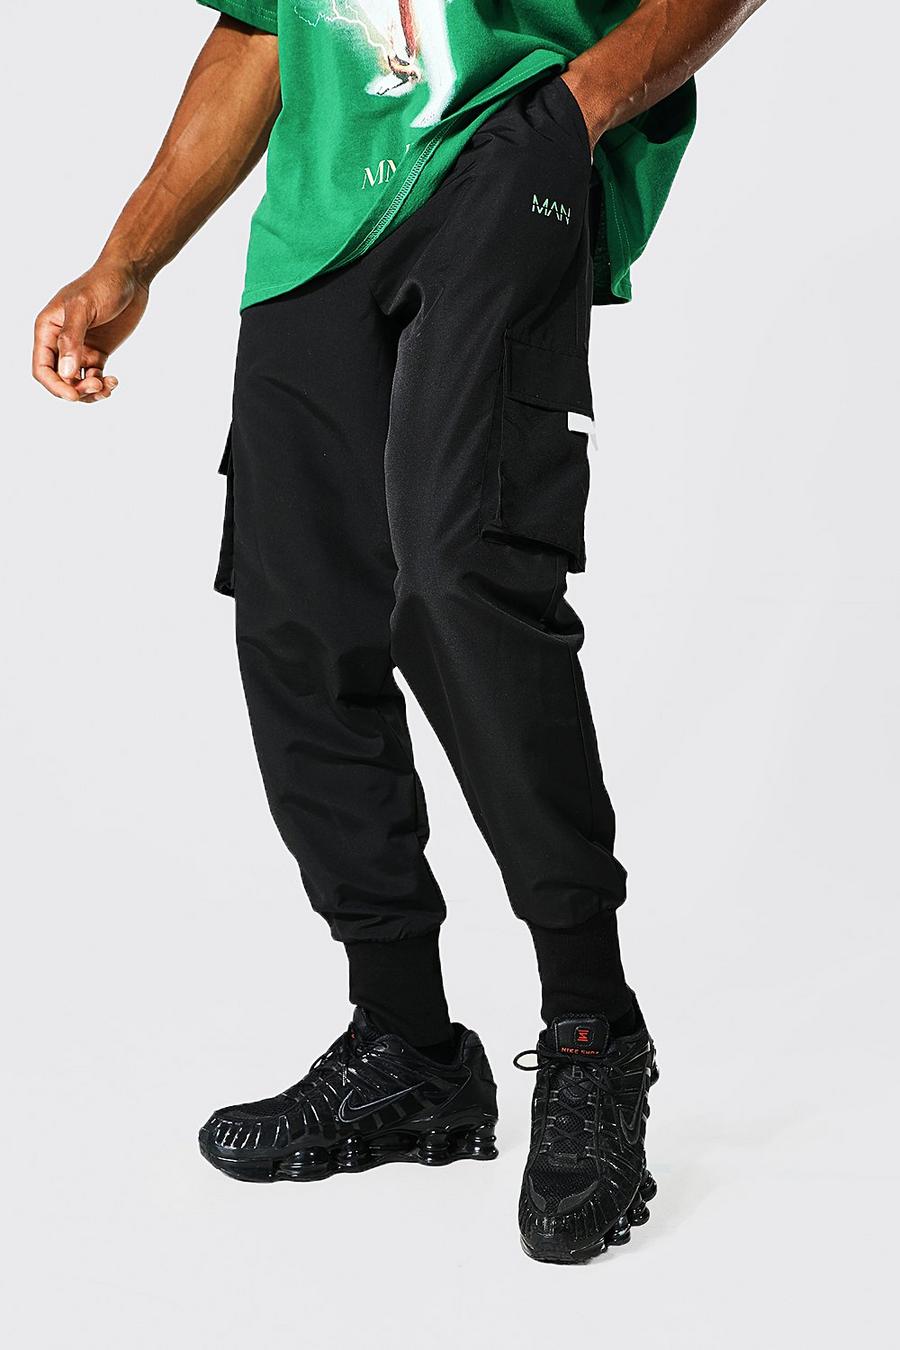 שחור מכנסי דגמ"ח עם חפתים רחבים וכיתוב Man image number 1